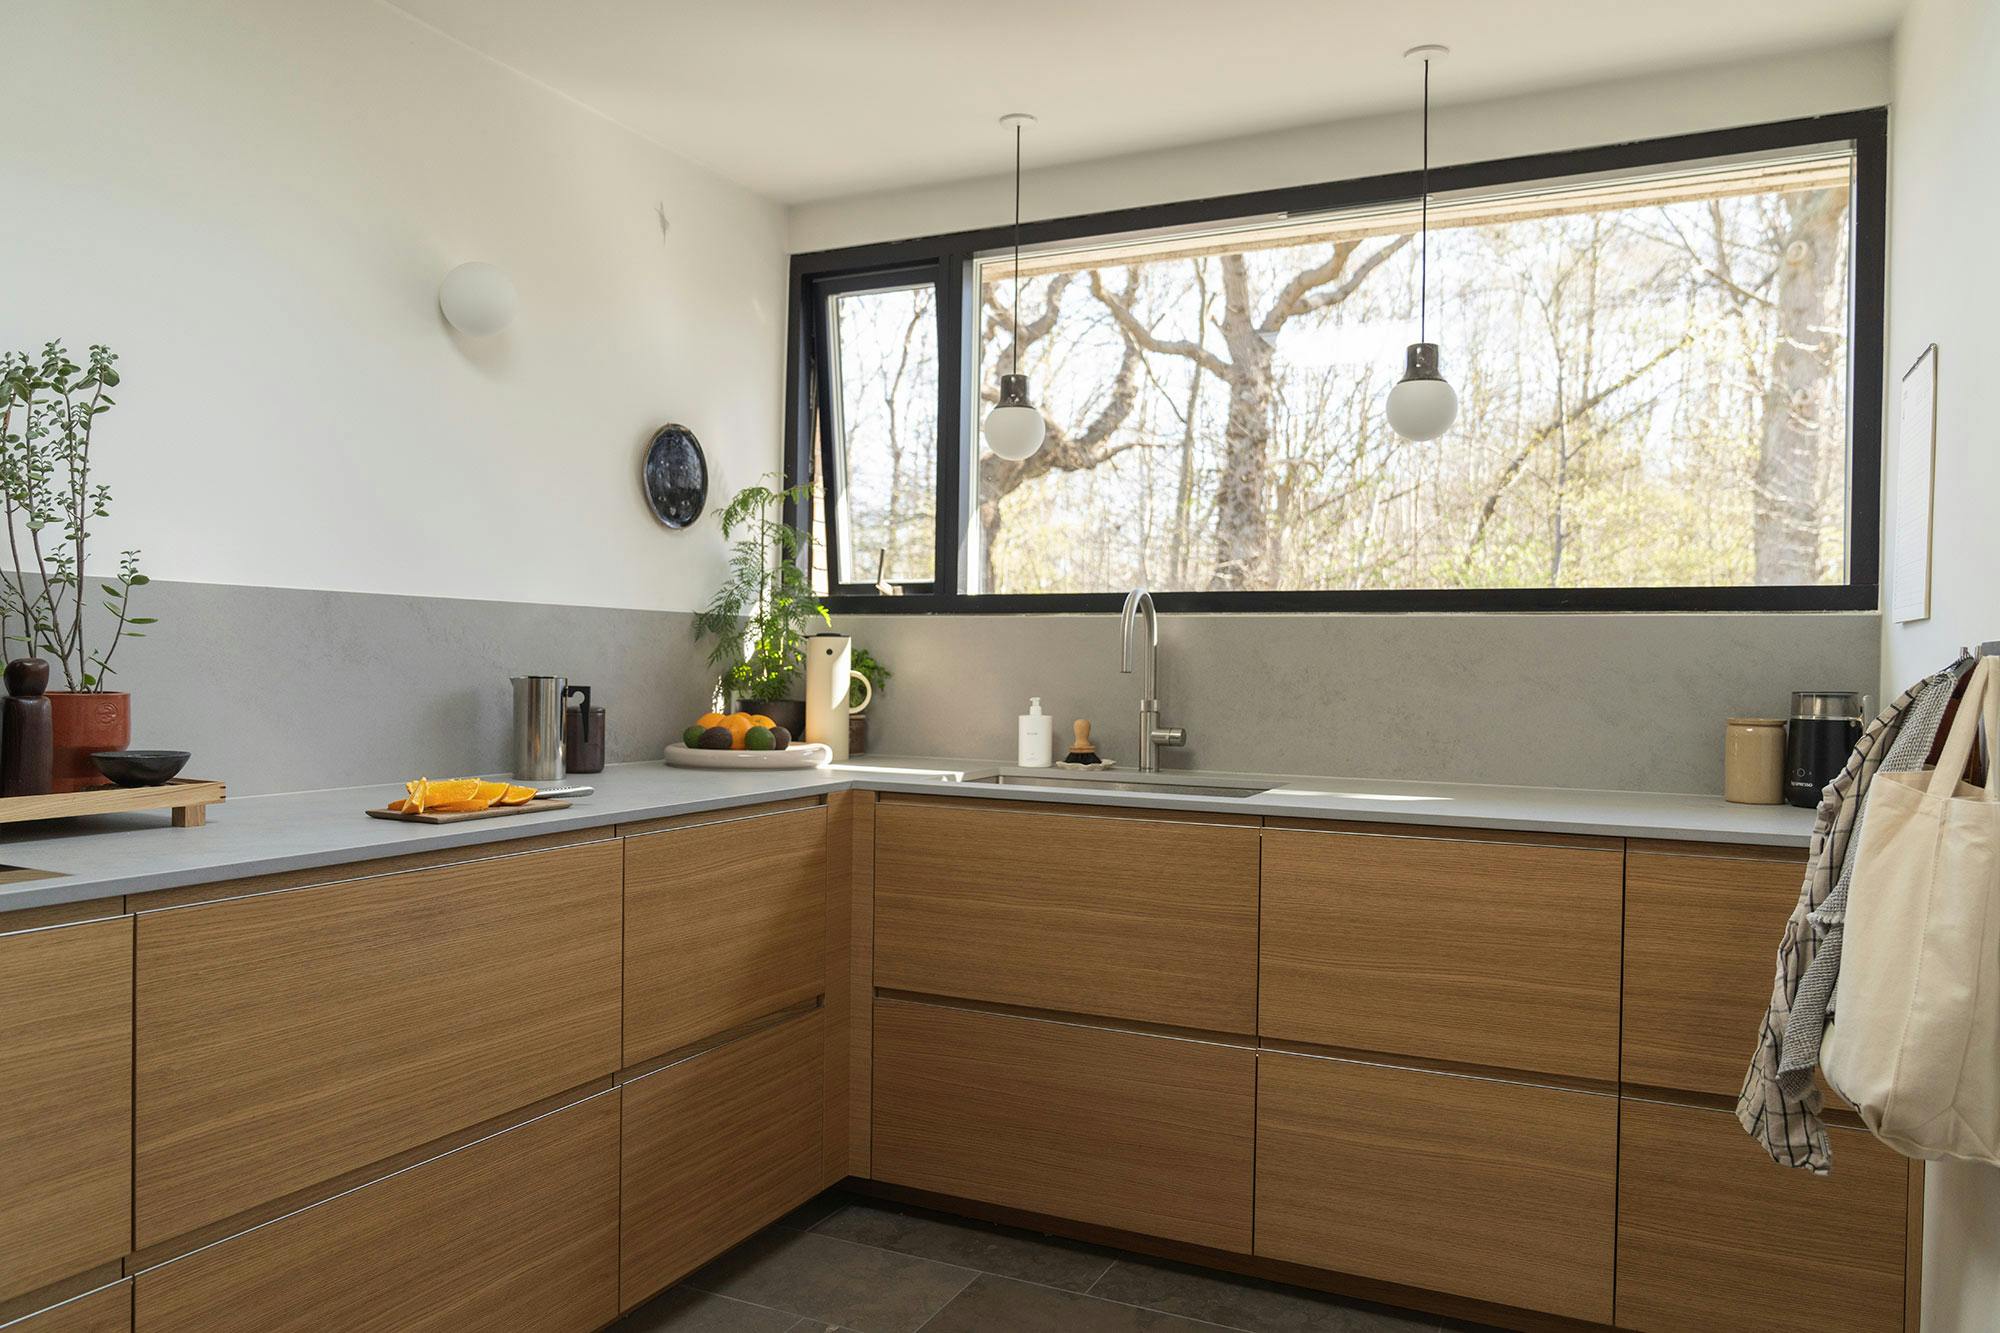 Numero immagine 44 della sezione corrente di Dekton Arga creates an elegant atmosphere in this open plan kitchen with a minimalist approach di Cosentino Italia